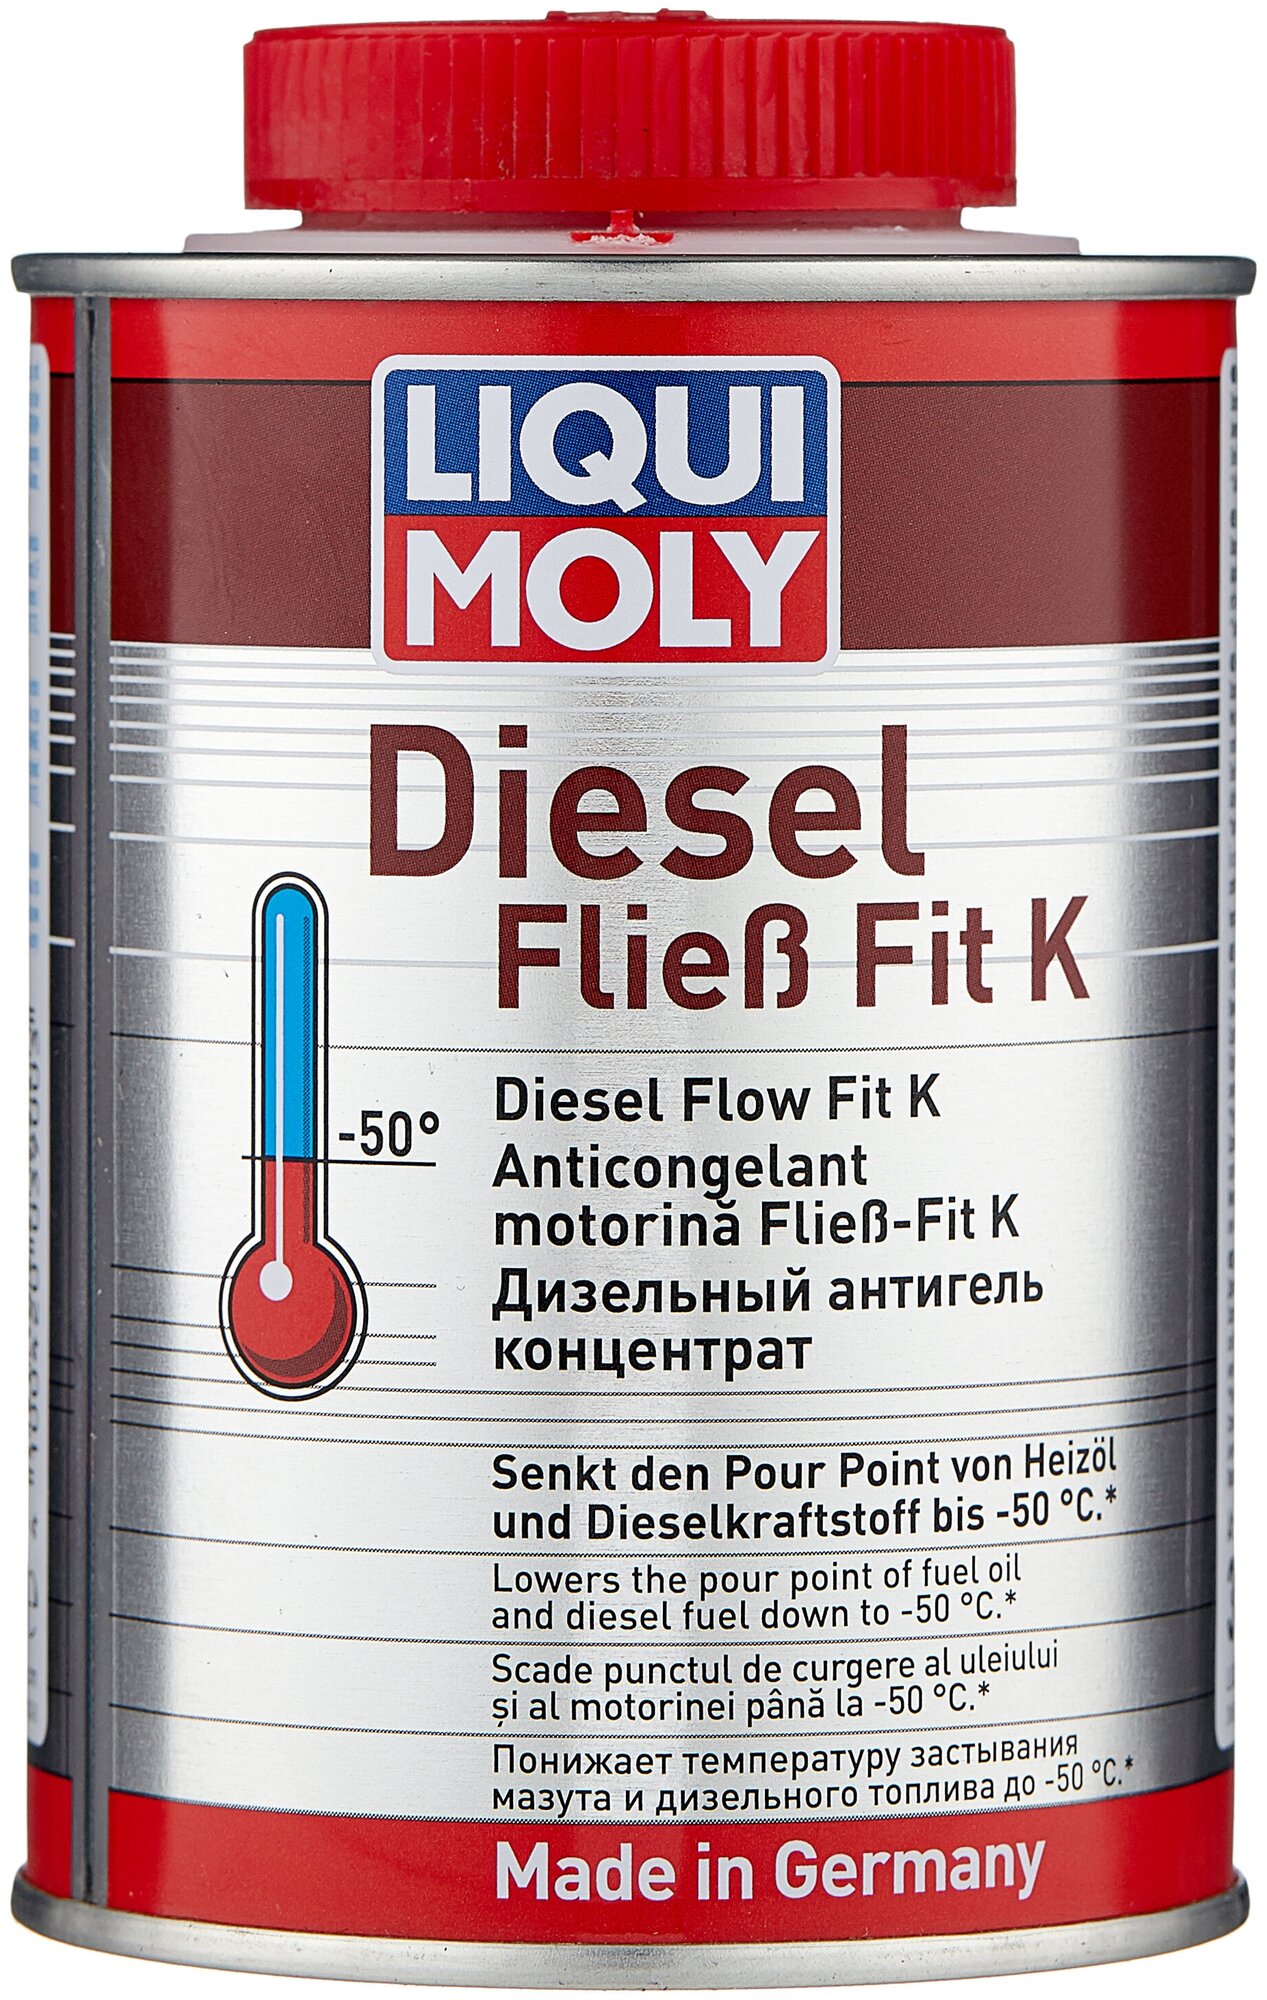 LIQUI MOLY 3900 LiquiMoly Diesel Fliess-Fit 0.25L_антигель концентрат дизельный !\ 1шт